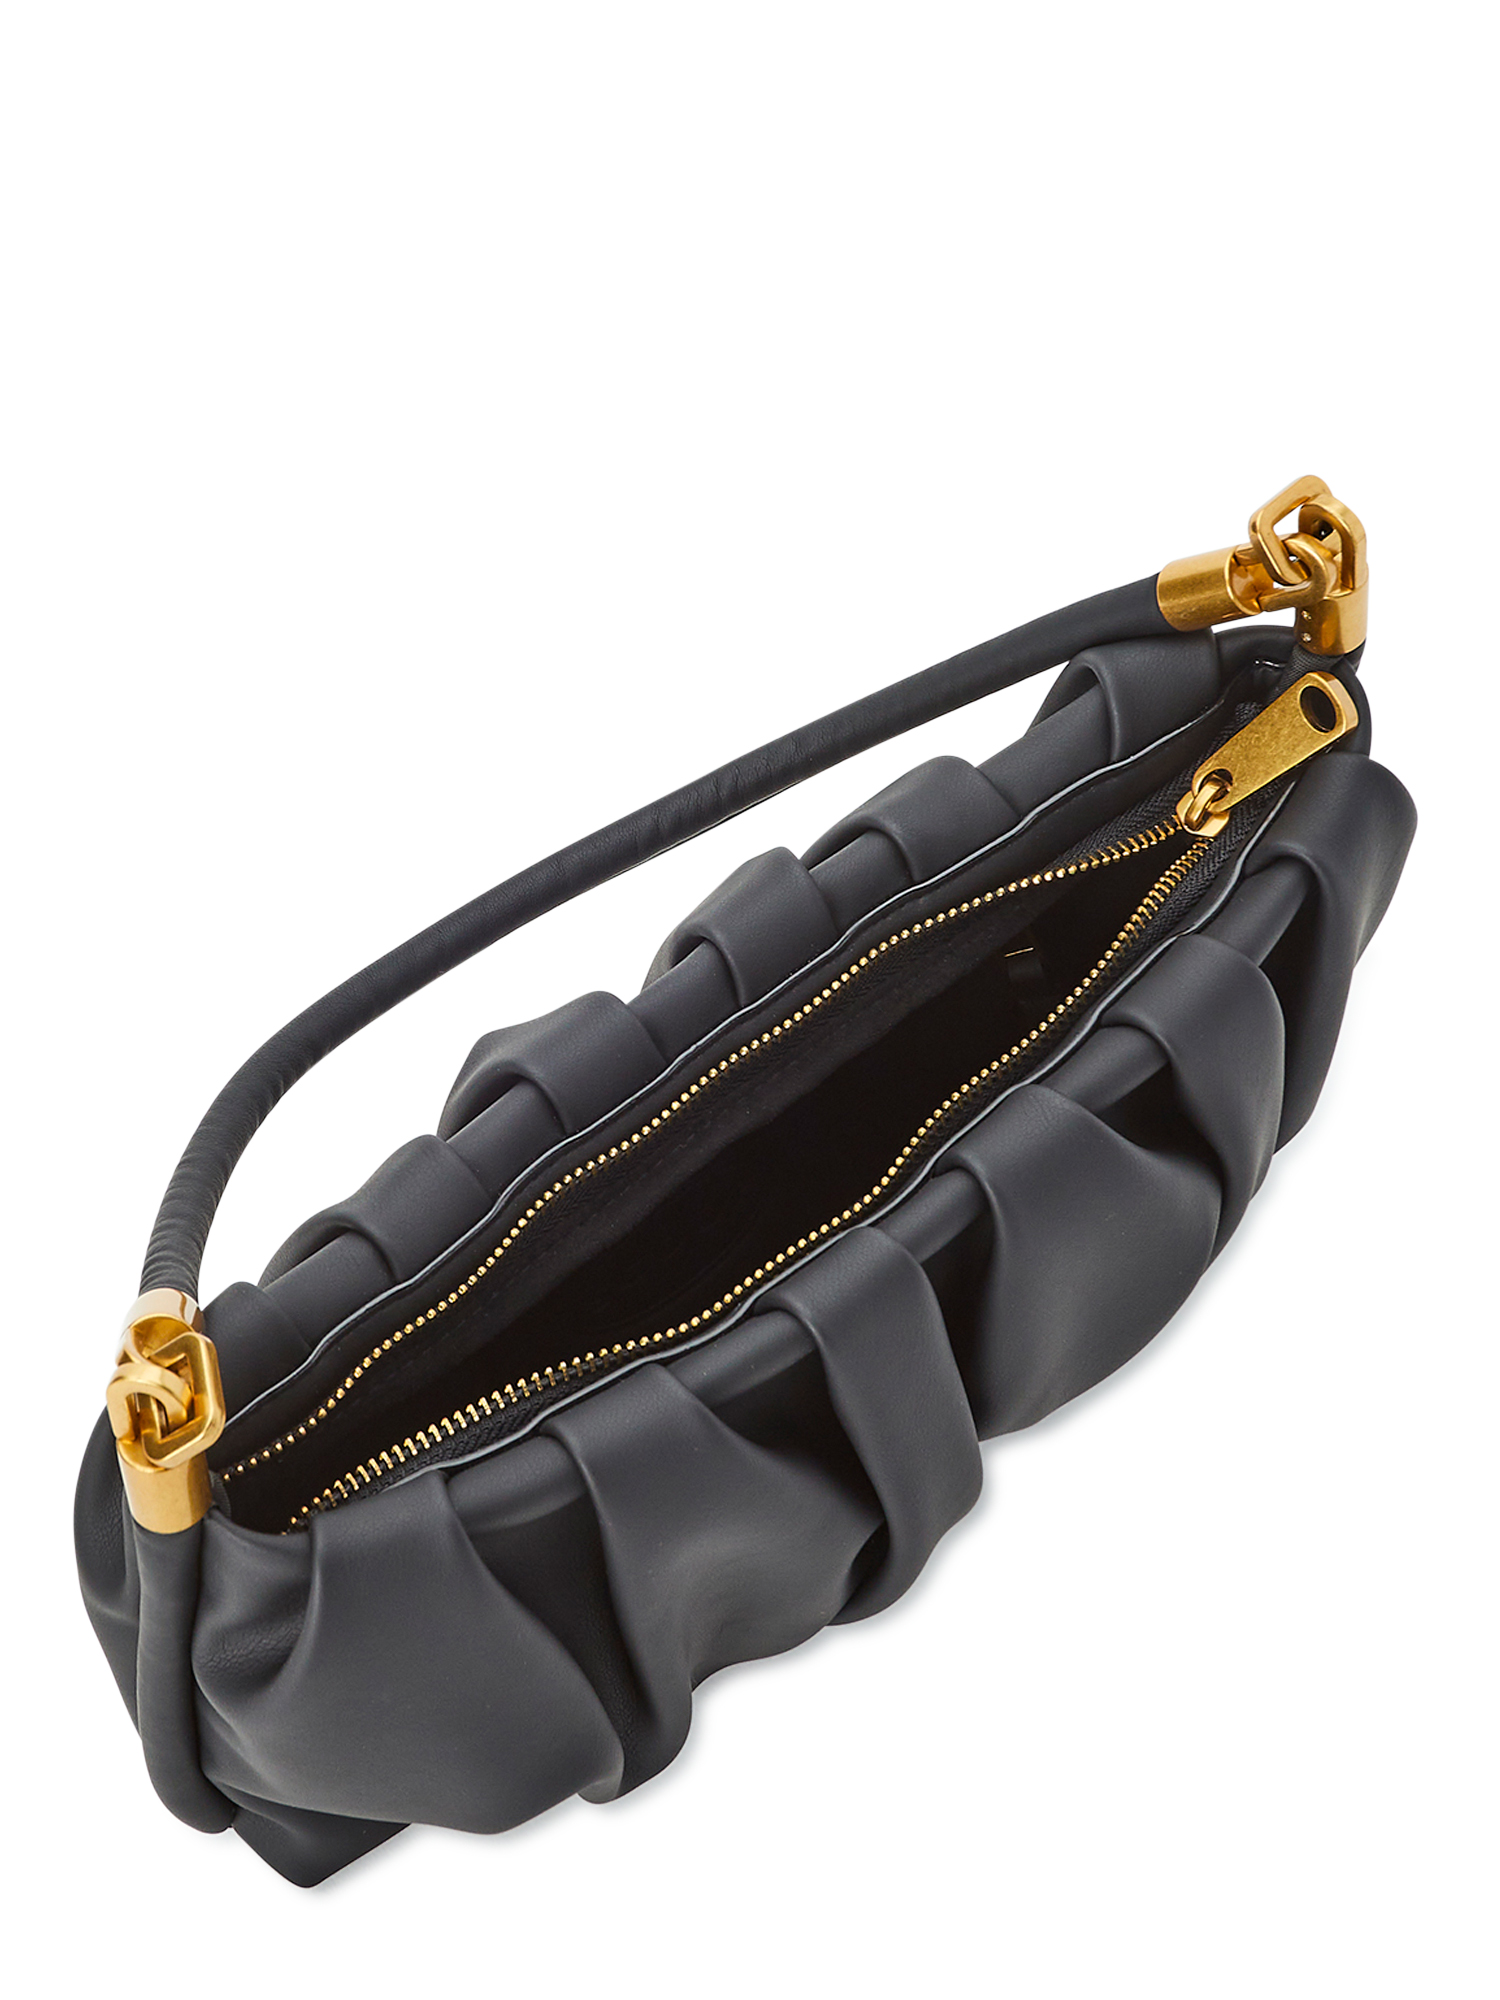 Scoop Women's Ruched Shoulder Bag Black - image 4 of 4